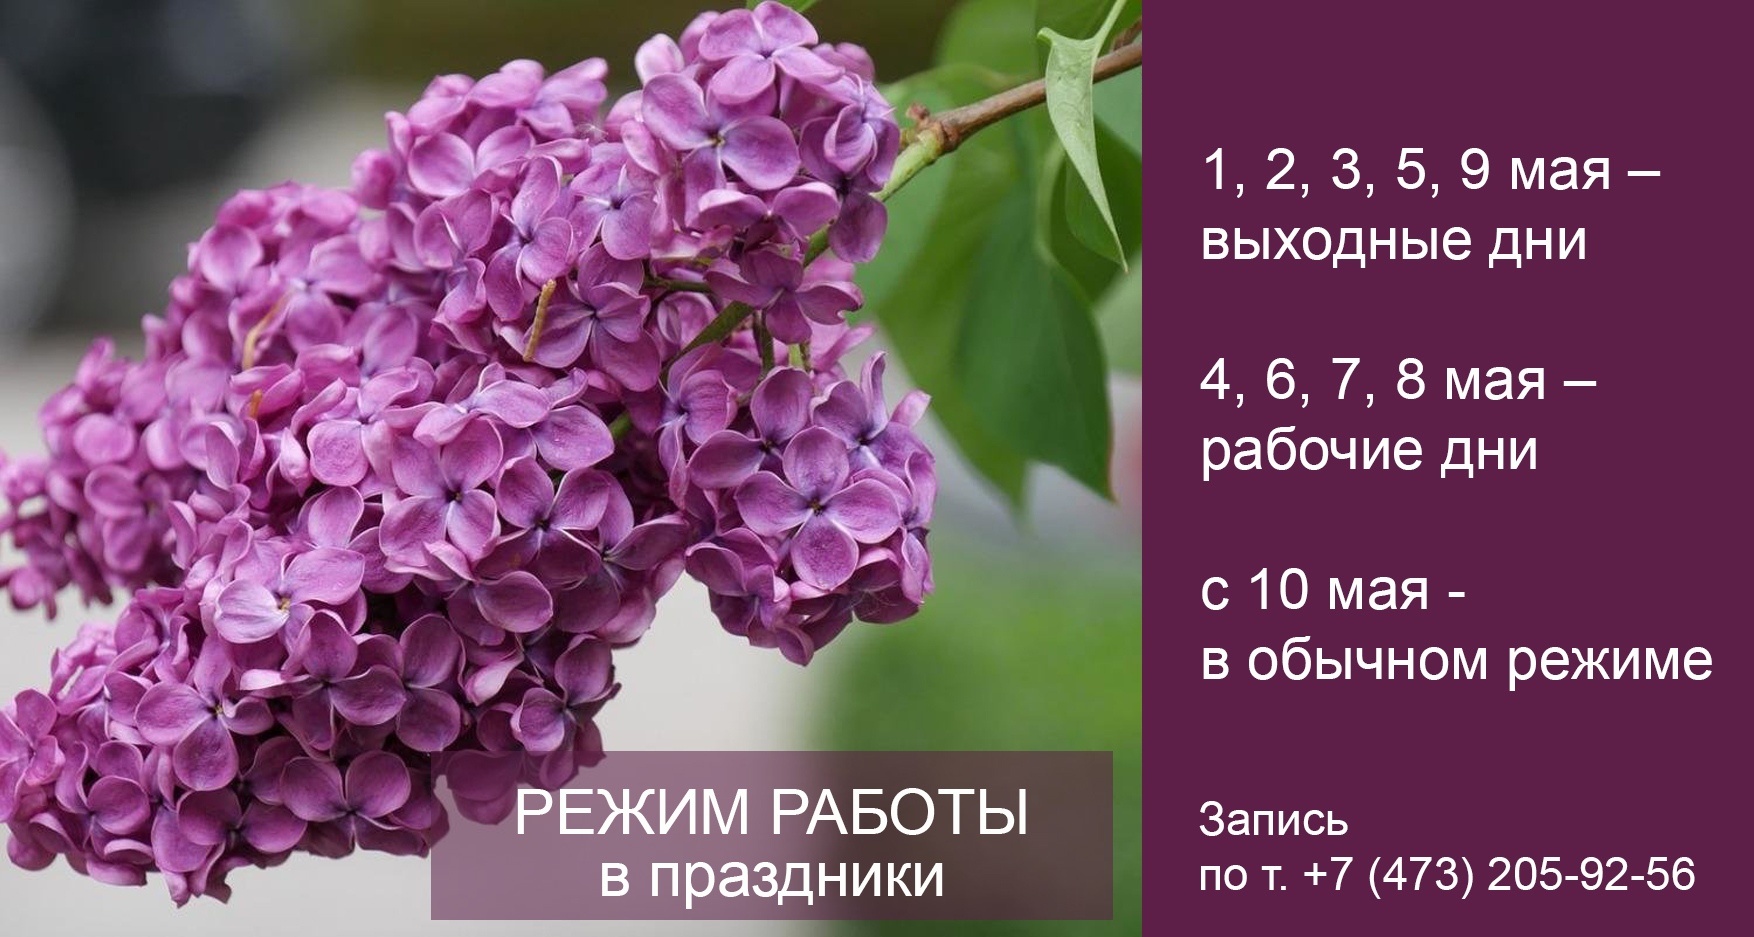 14 мая выходной в иркутске